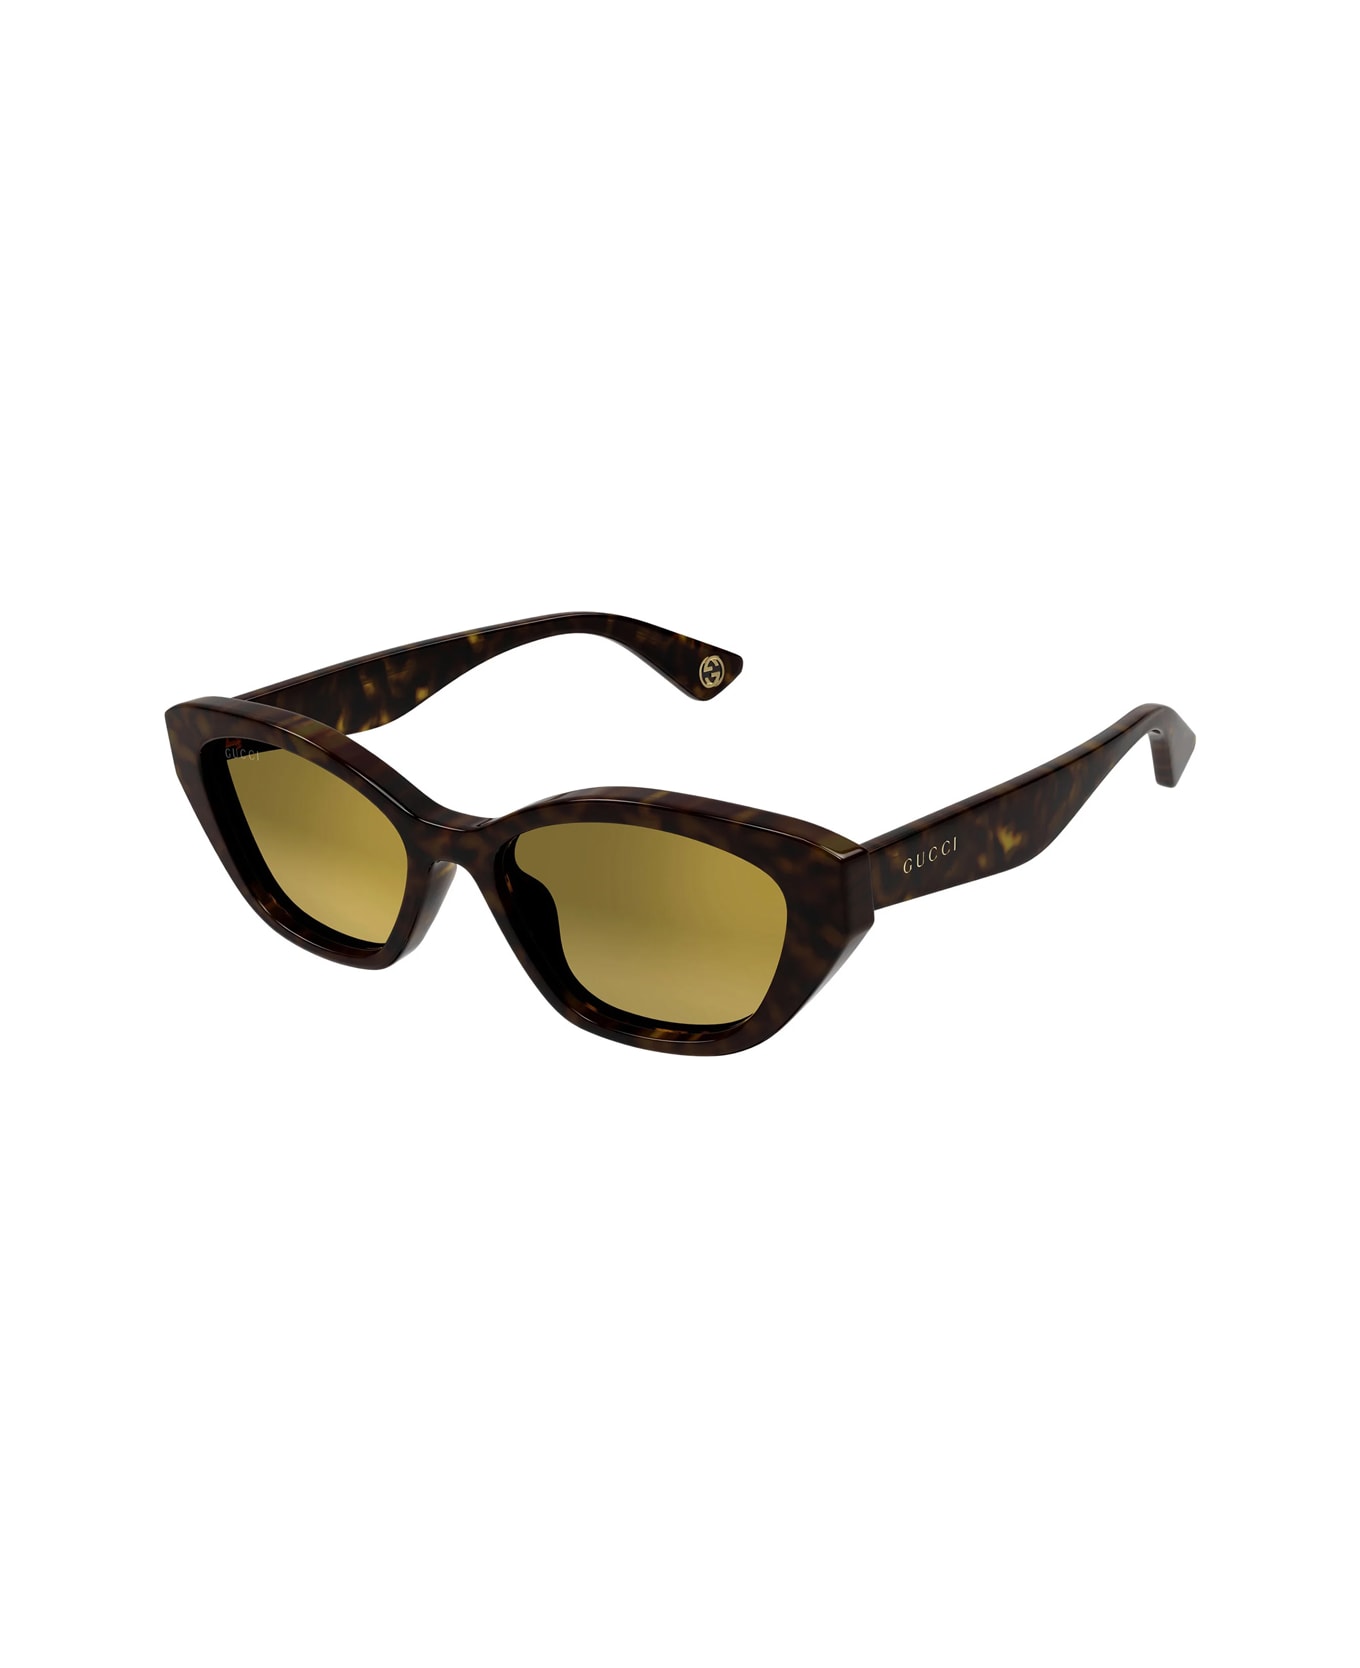 Gucci Eyewear Gg1638s Linea Lettering 002 Havana Gold Sunglasses - Marrone